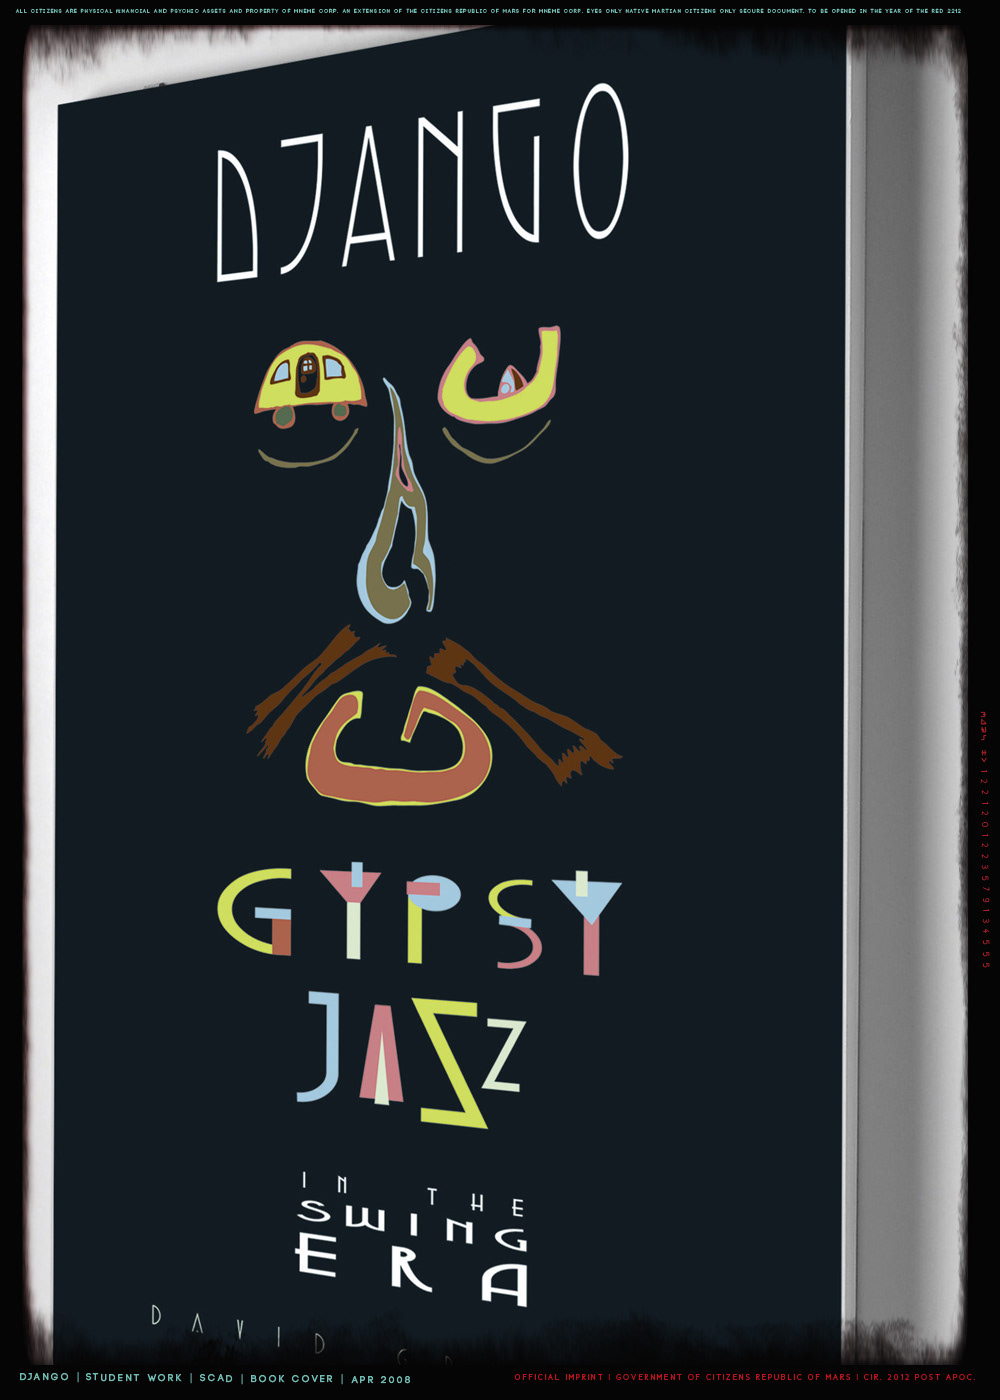 django reinhardt  gypsy jazz  Music  trailer  Illustration  typography  history  20s